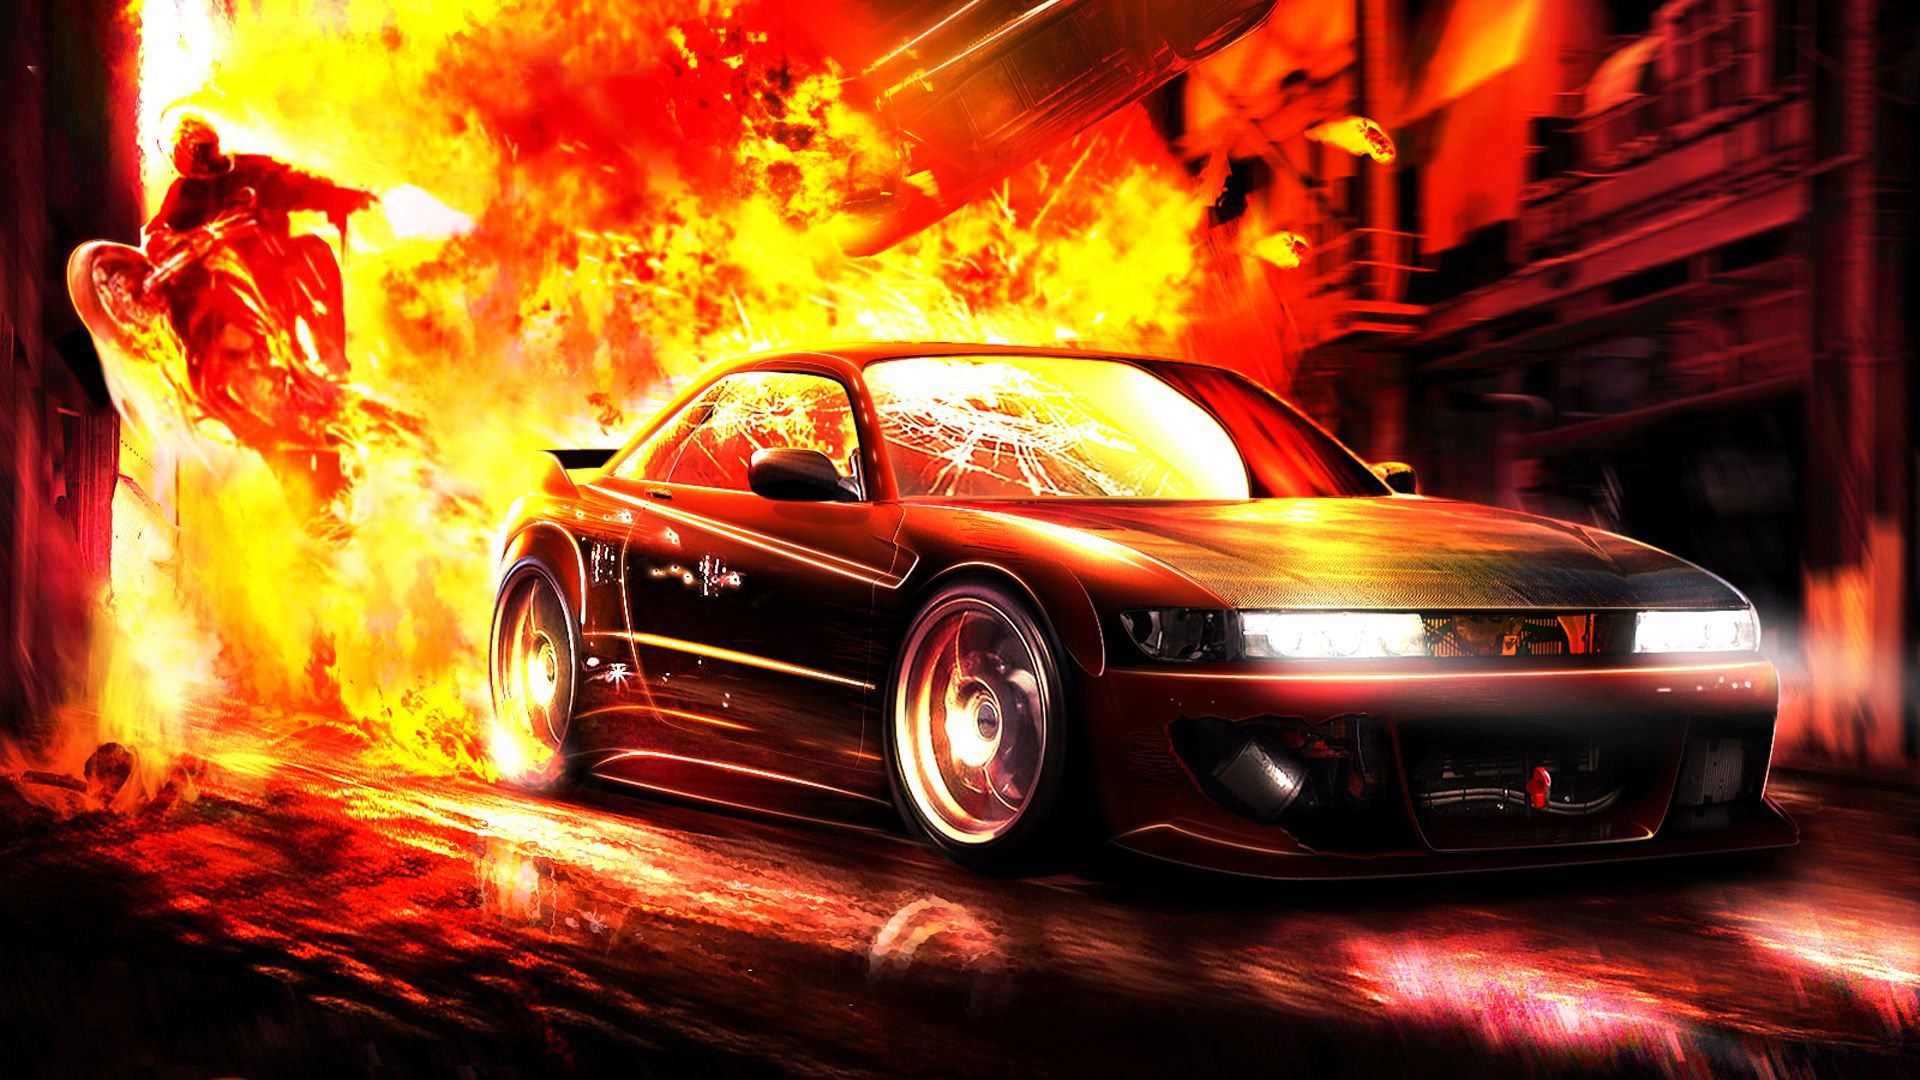 Free download Cars explosion wallpaper .wallpaperafari.com